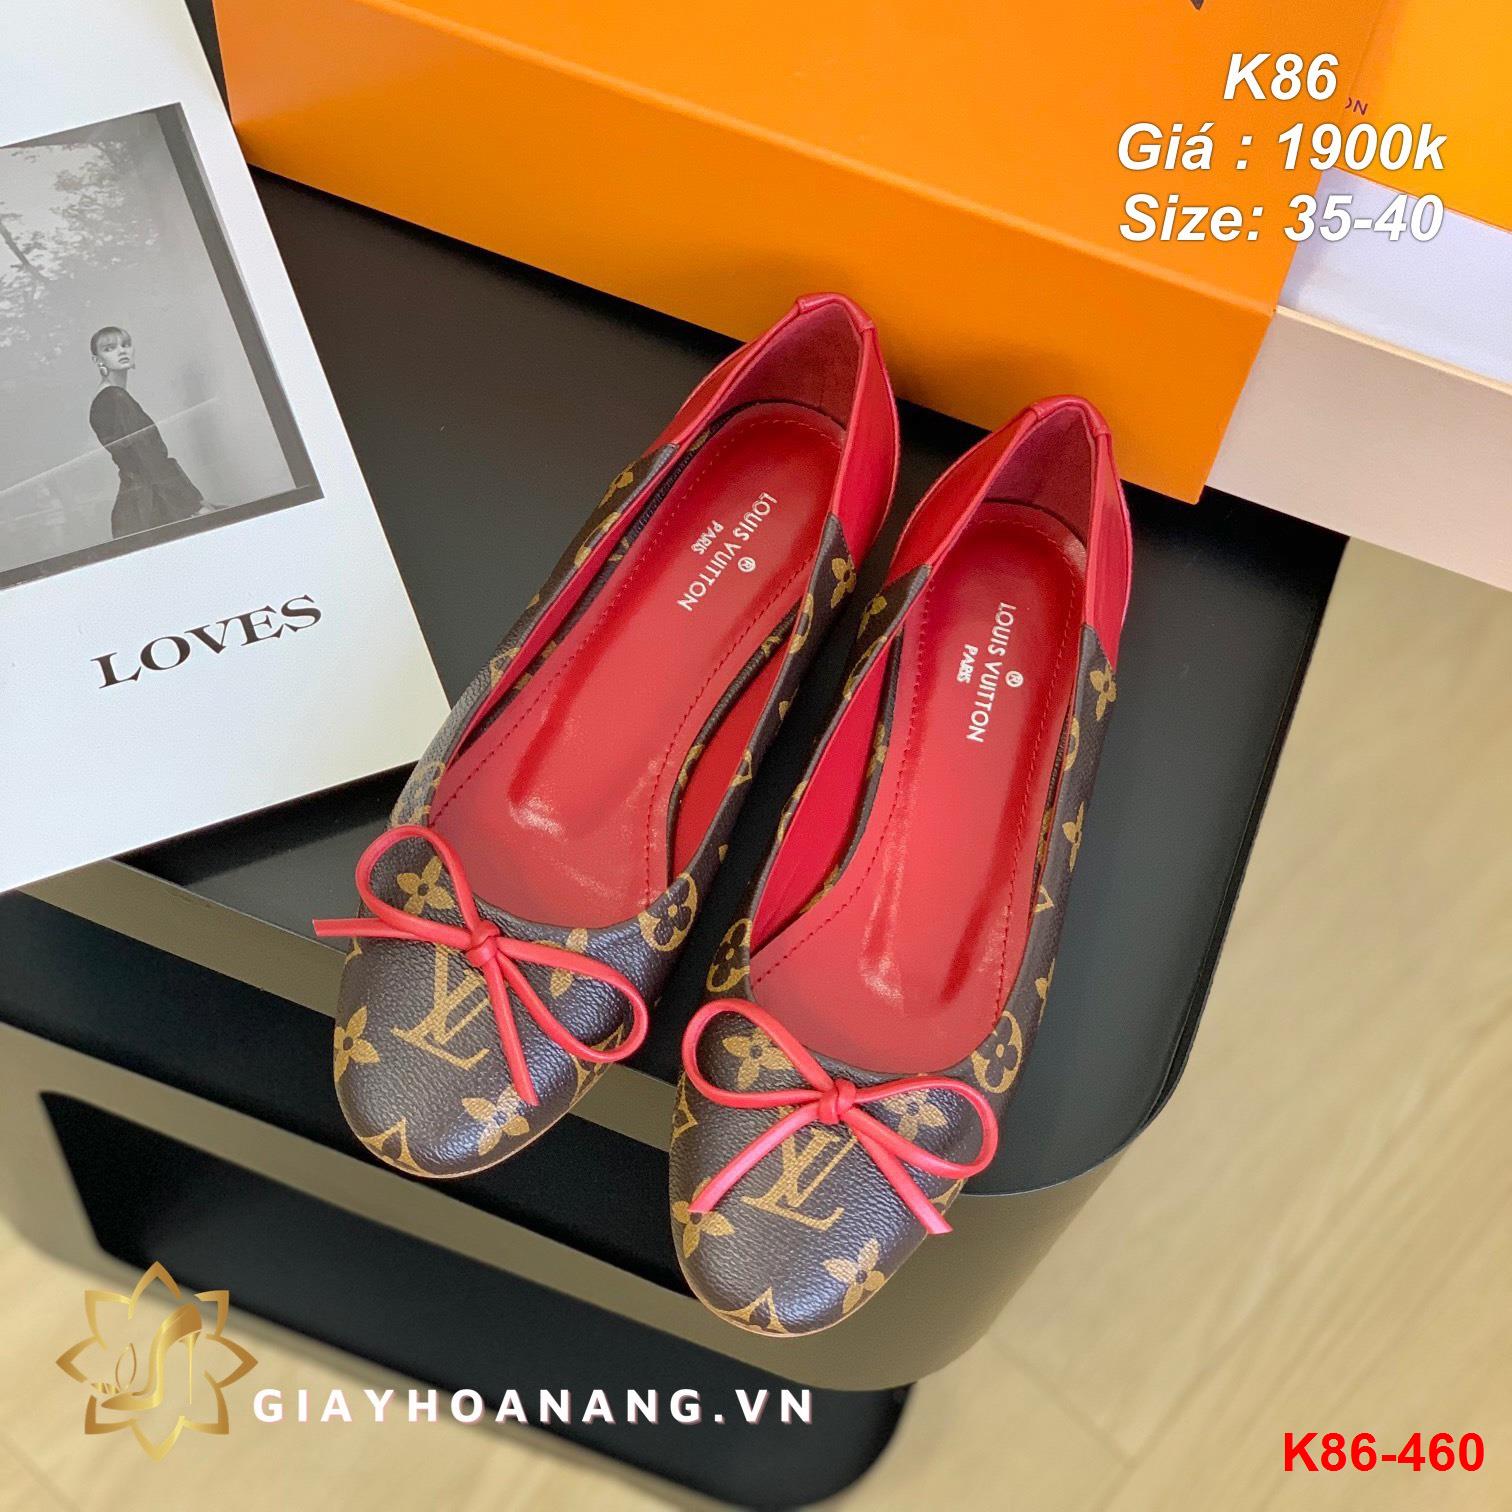 K86-460 Louis Vuitton giày bệt siêu cấp